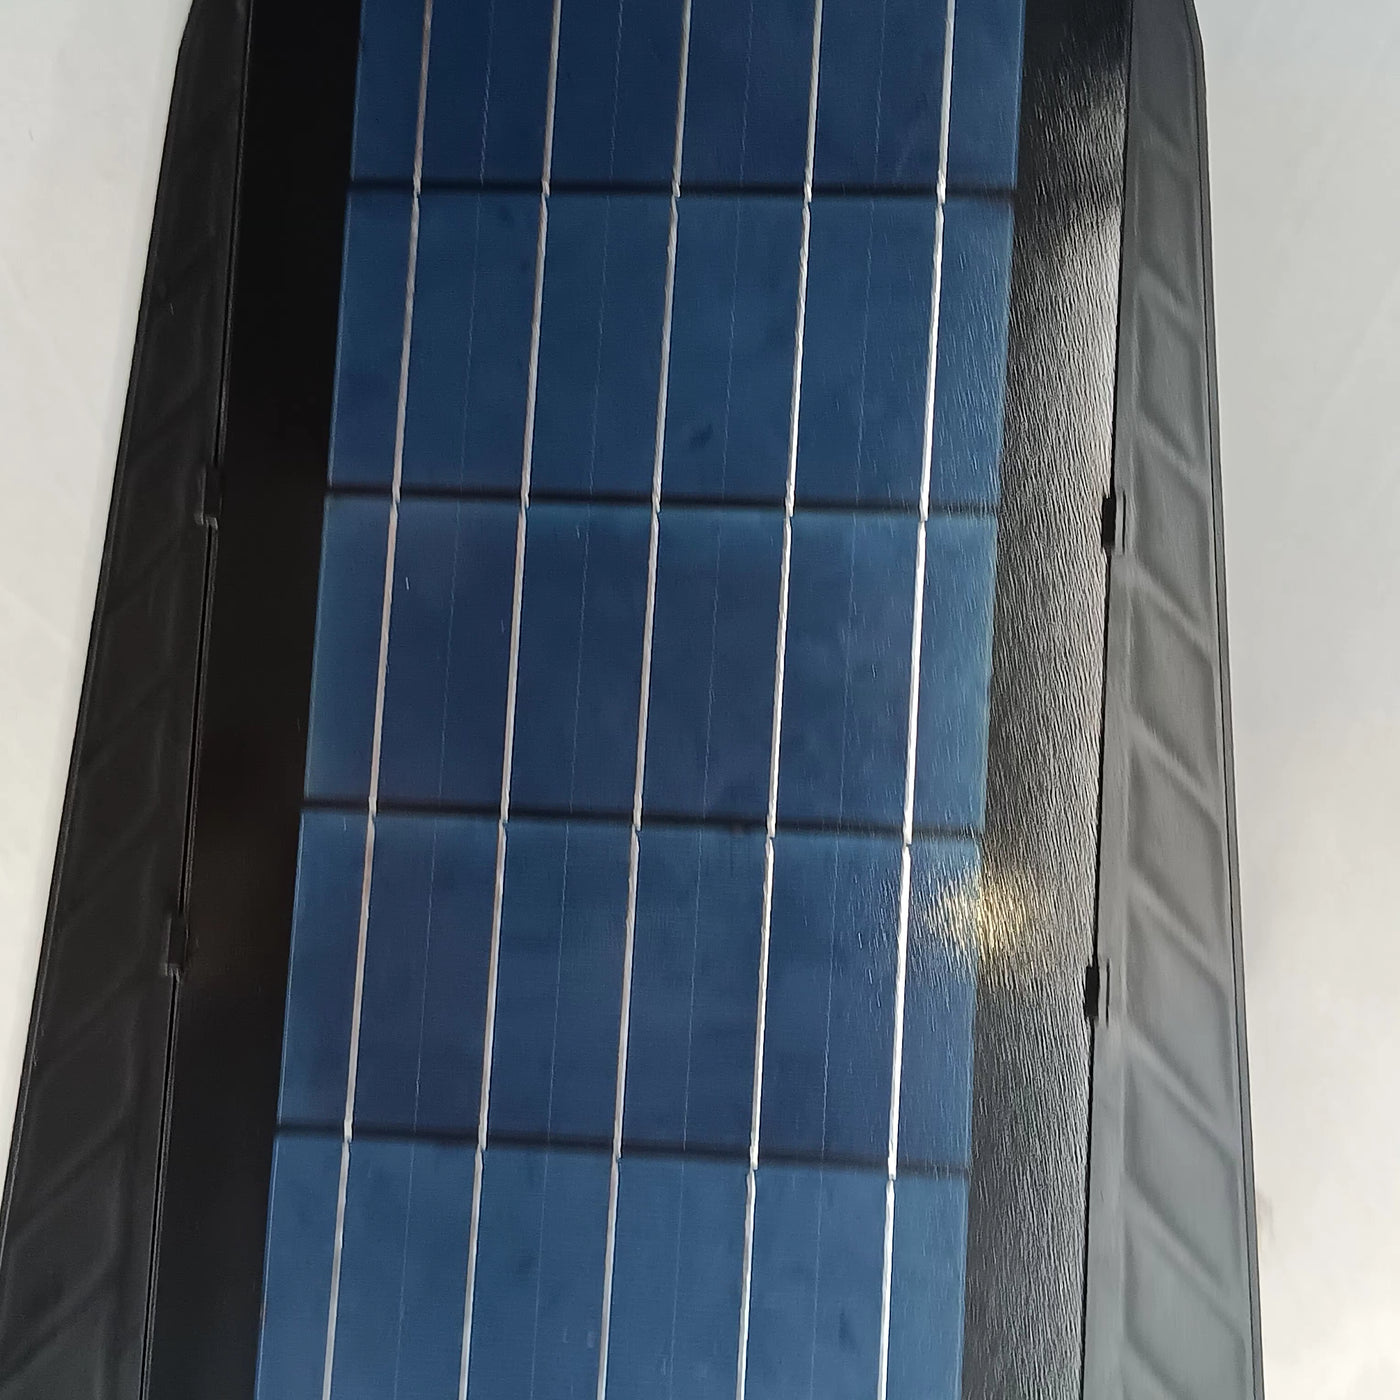 300 Watt Solar Street Light solar panel side